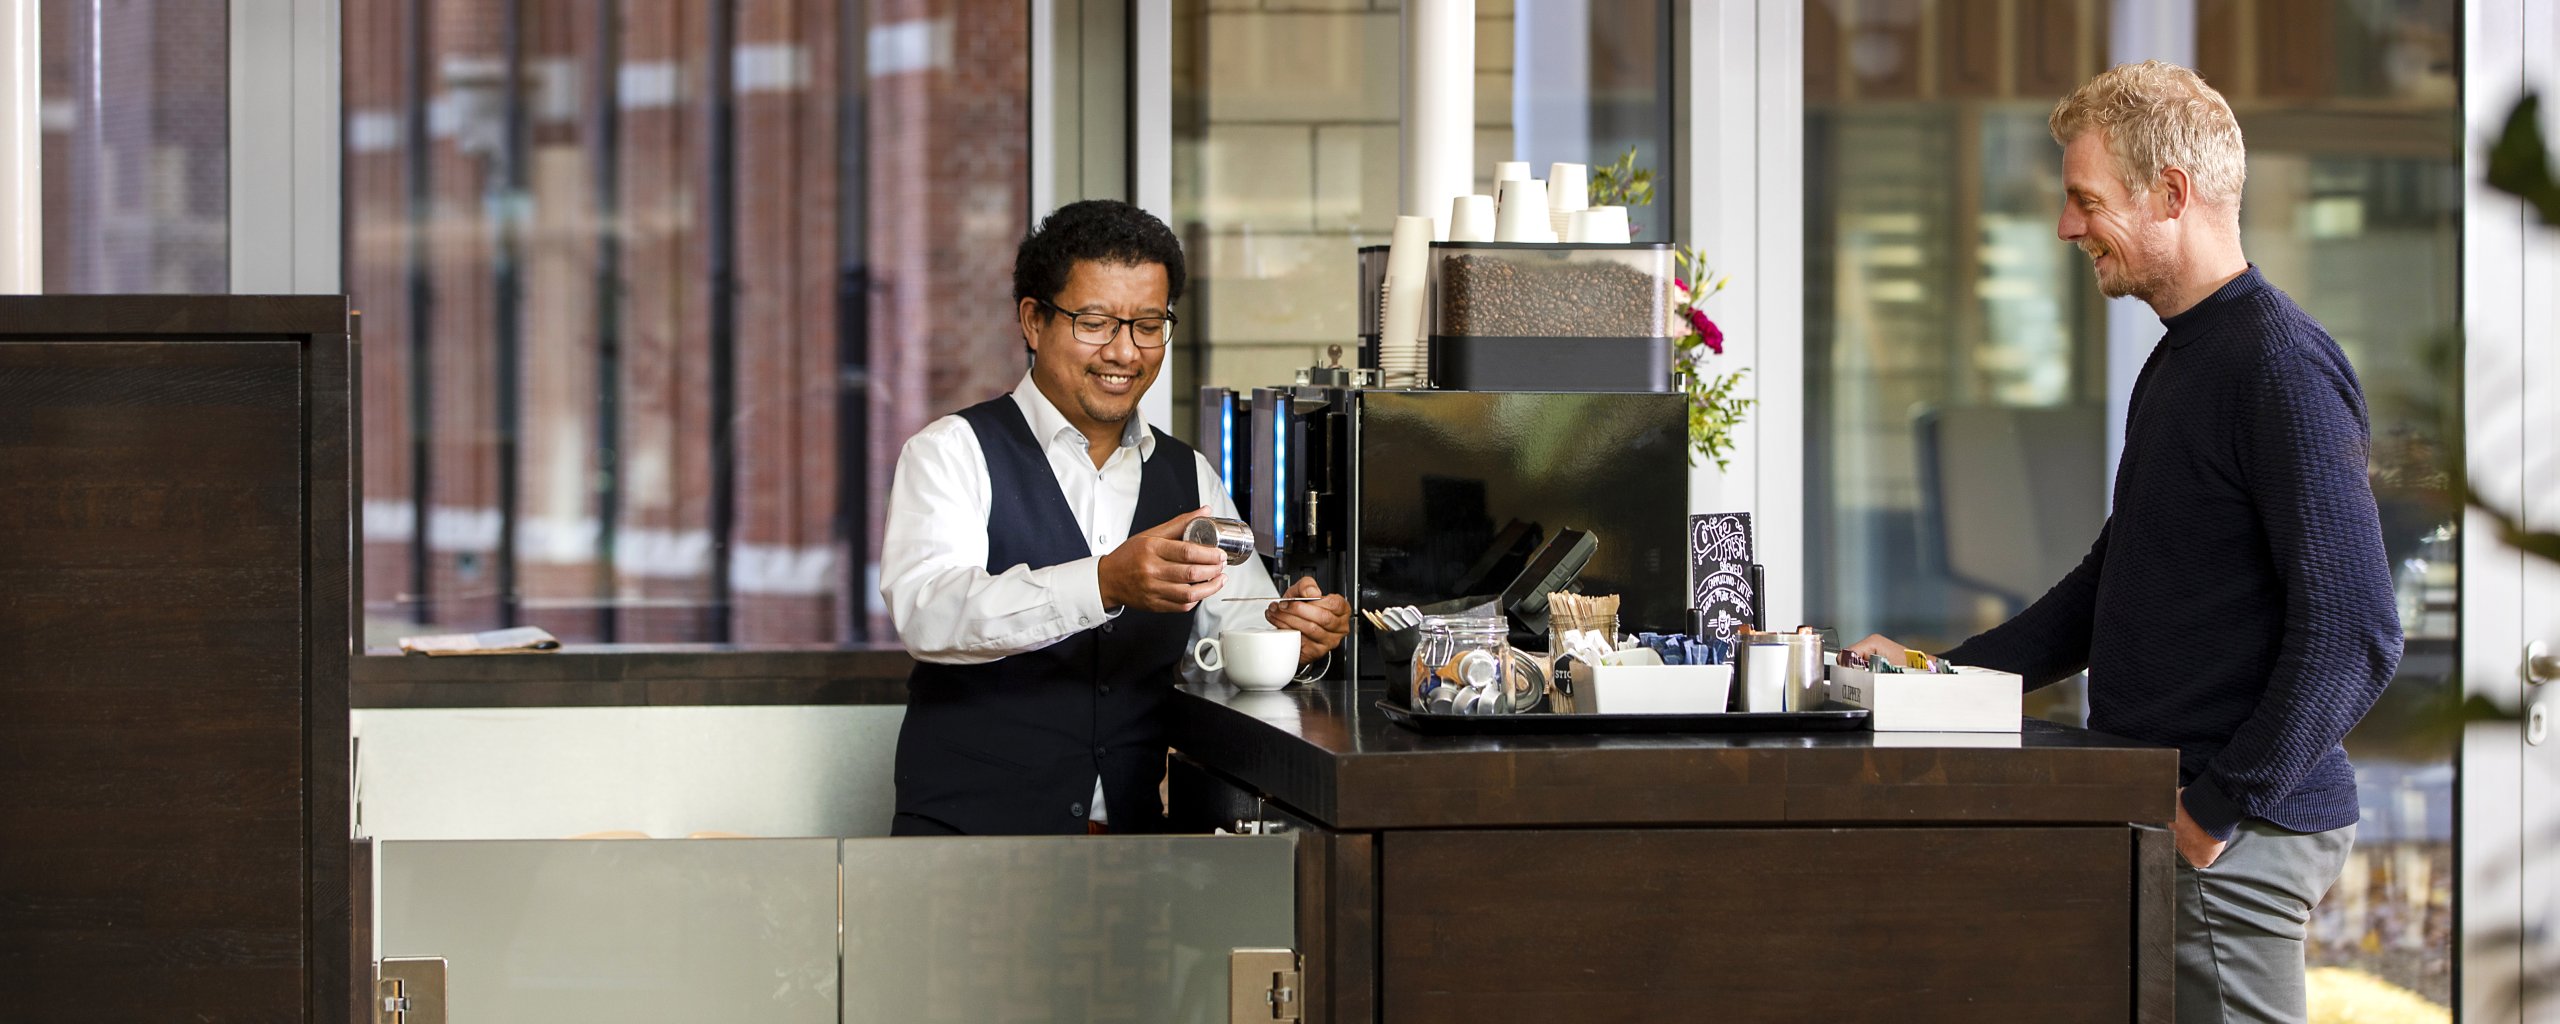 Er staat een man koffie te maken voor een collega uit het provinciehuis